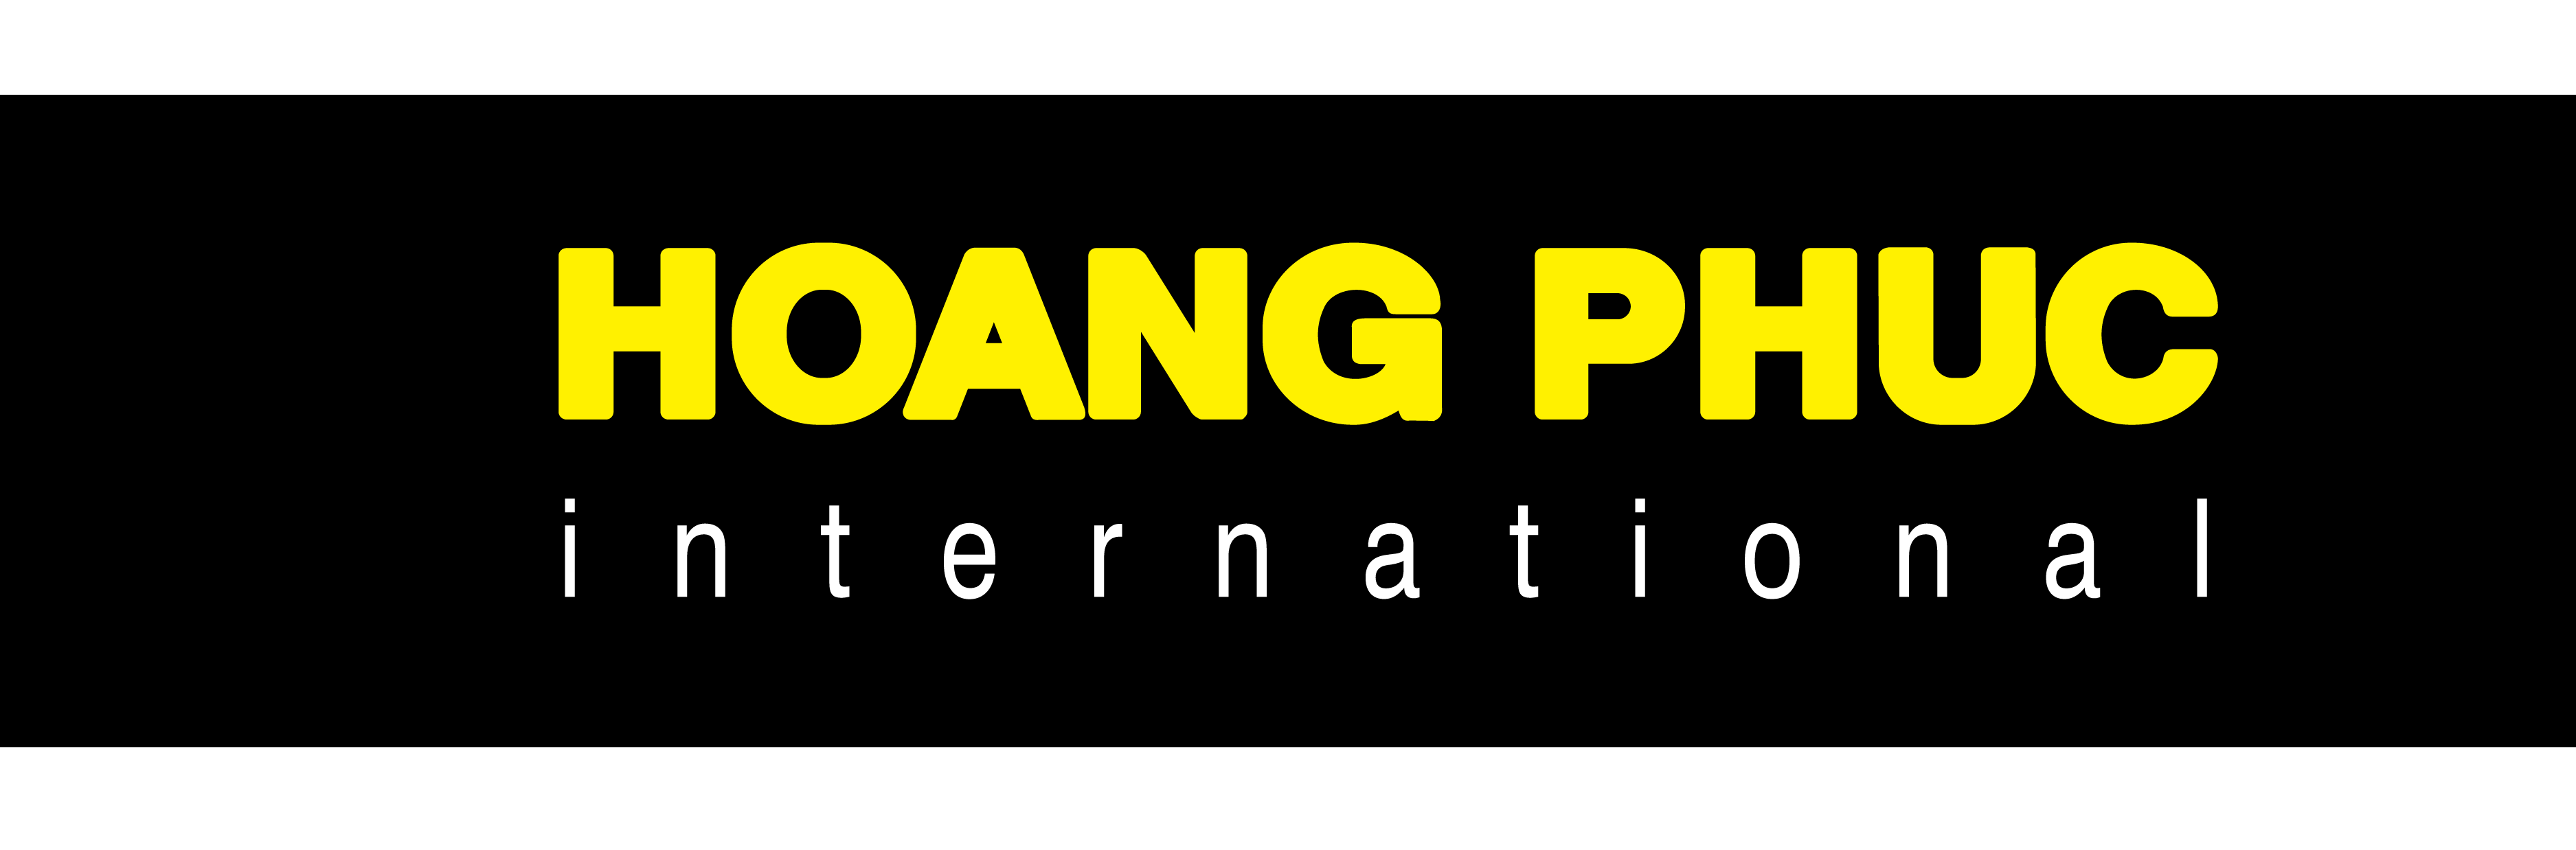 HOANG PHUC International